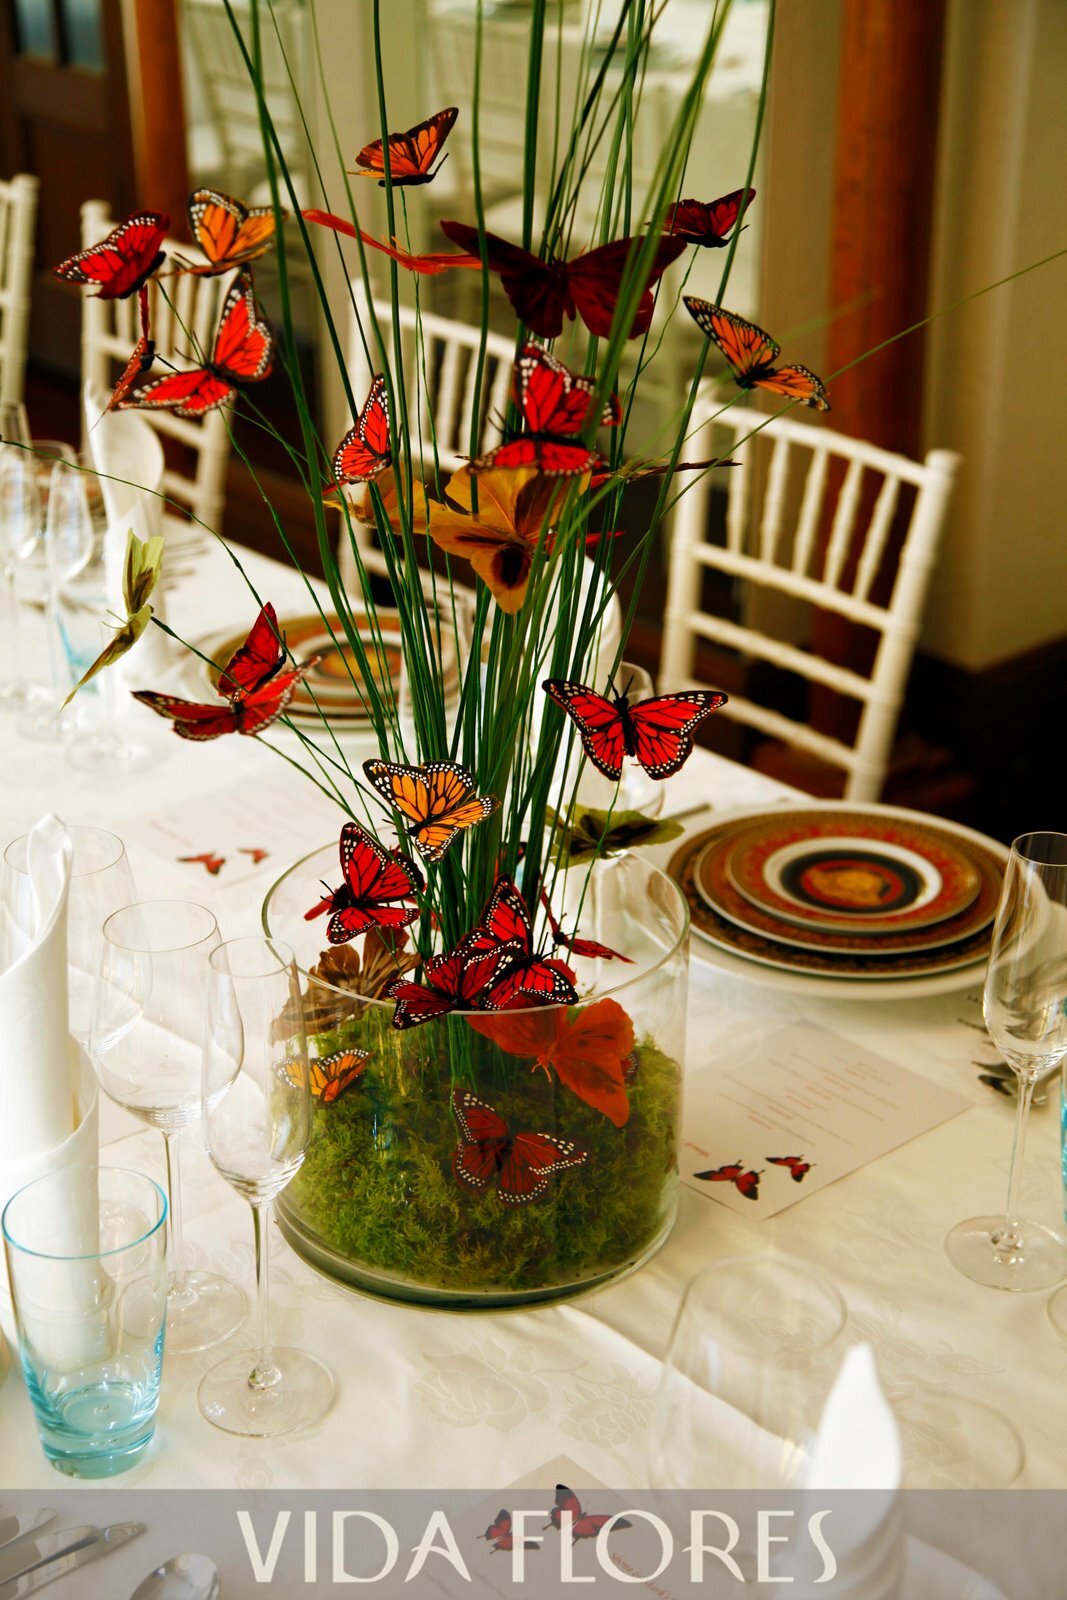 Adorno de flores decorativo para mesas. Flores con detalles.